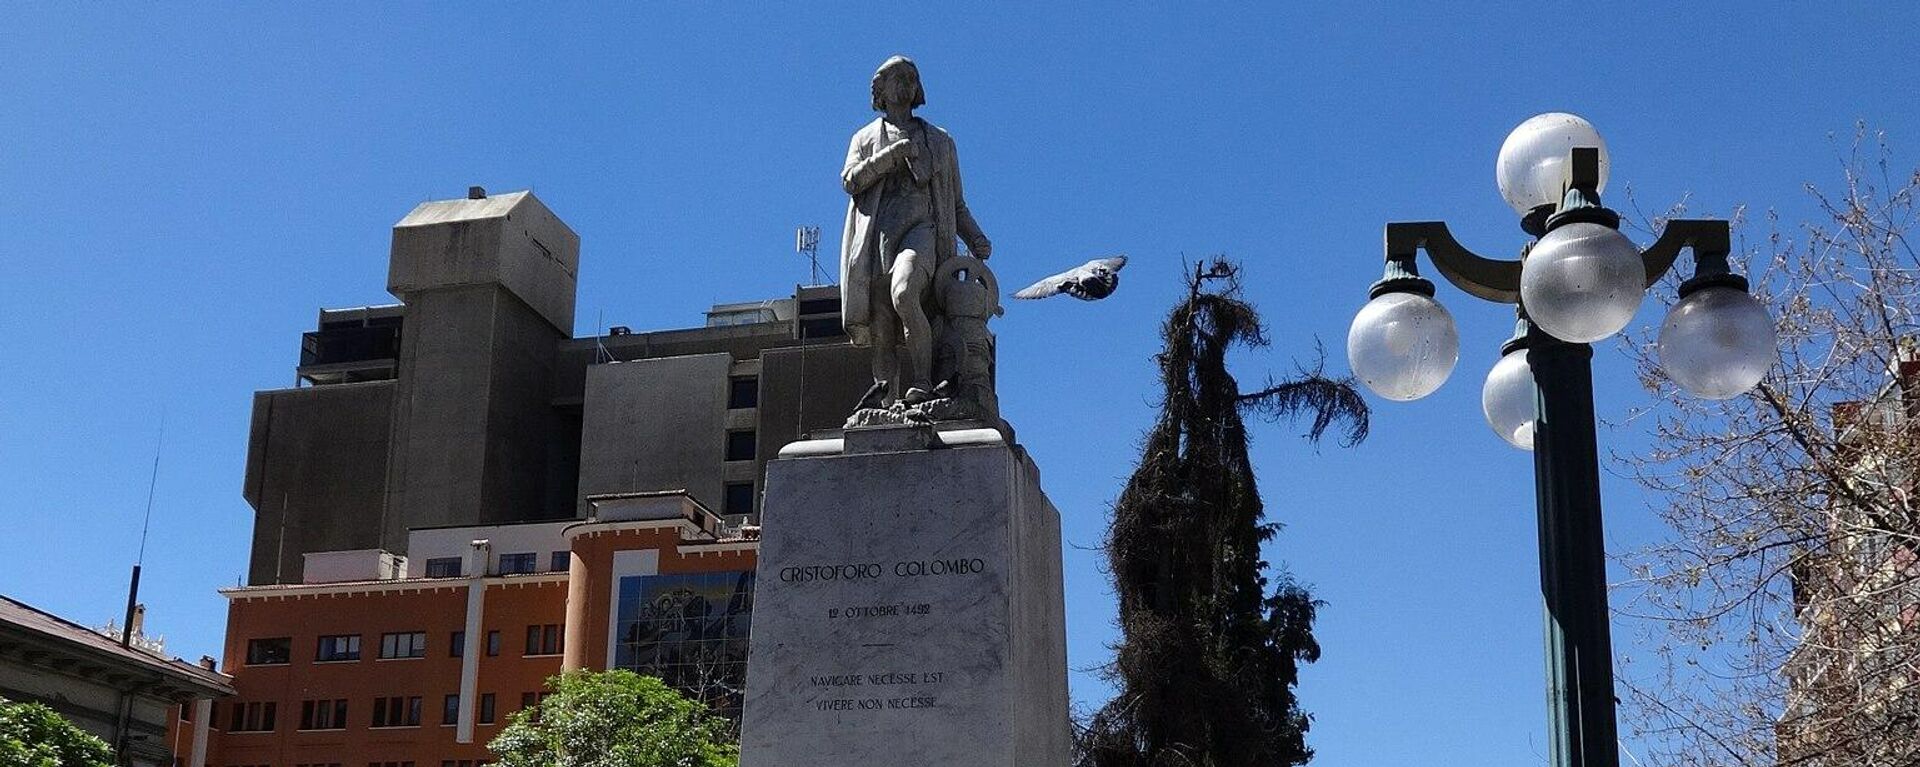 Monumento a Cristóbal Colón en el Paseo del Prado, La Paz, Bolivia - Sputnik Mundo, 1920, 02.08.2021